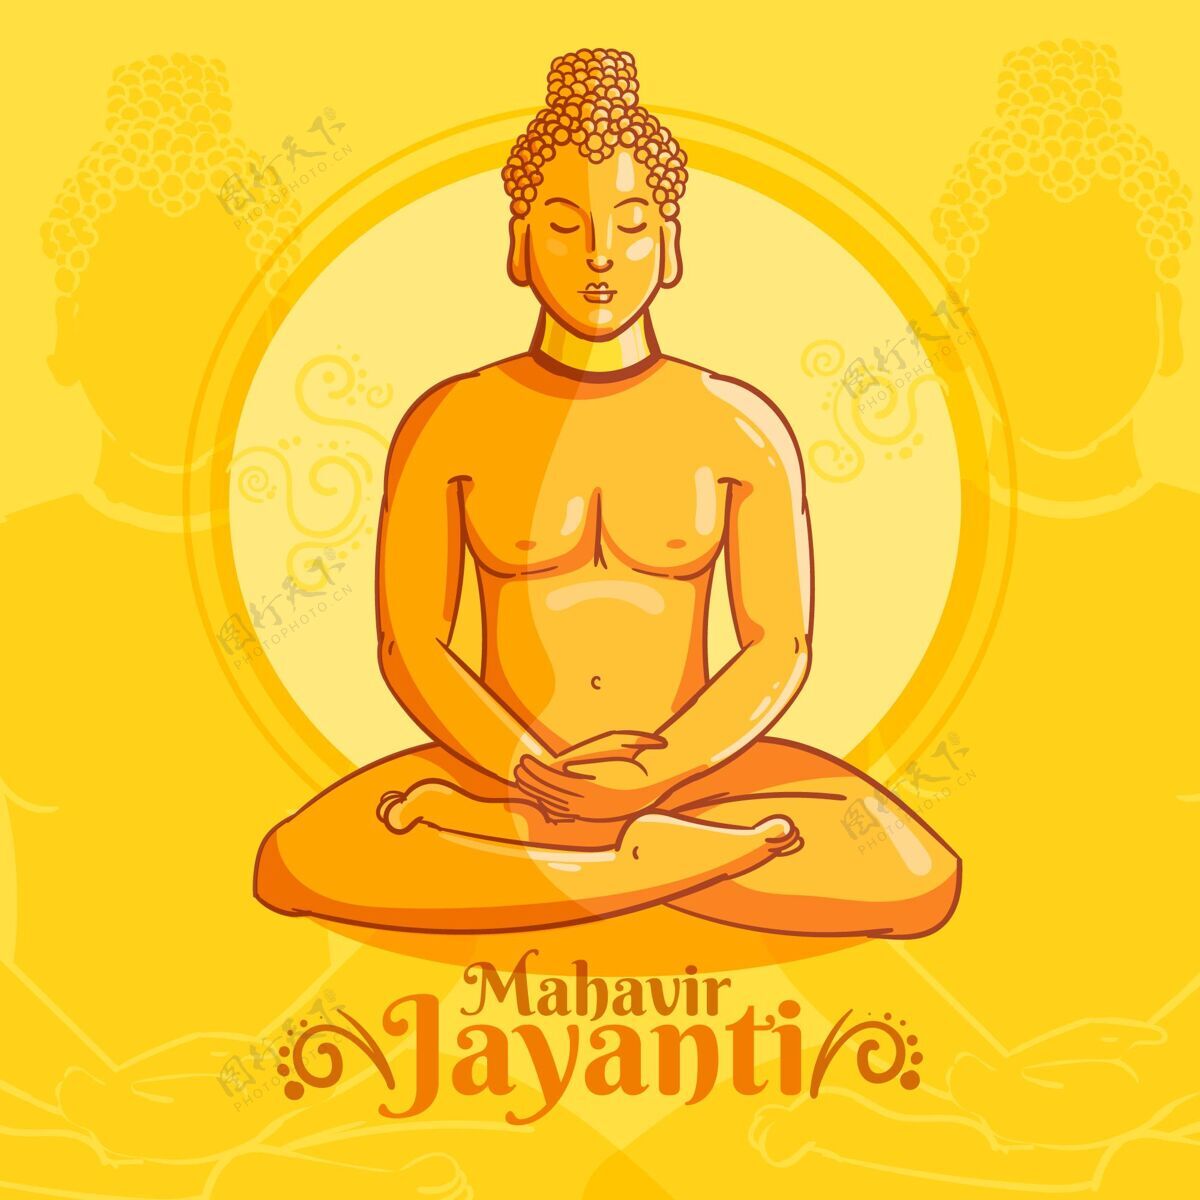 佛法详细的mahavirjayanti插图插图宗教节日